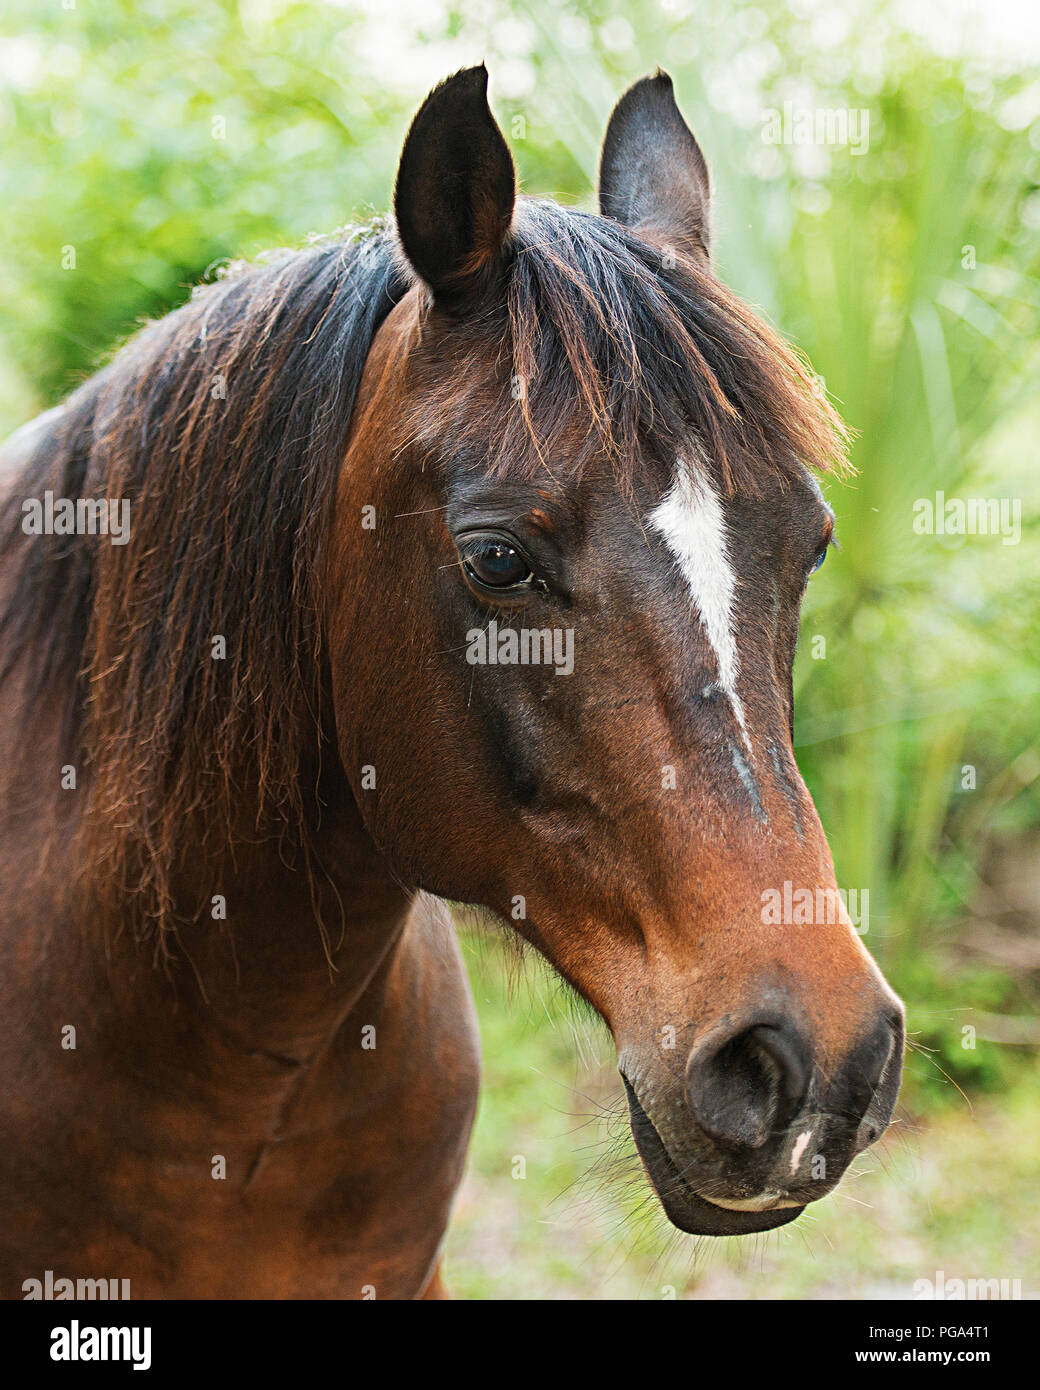 Cavallo testa di animale di close-up di profilo laterale vista con un bokeh sfondo. Immagine. Foto. Immagine. Ritratto. Foto Stock